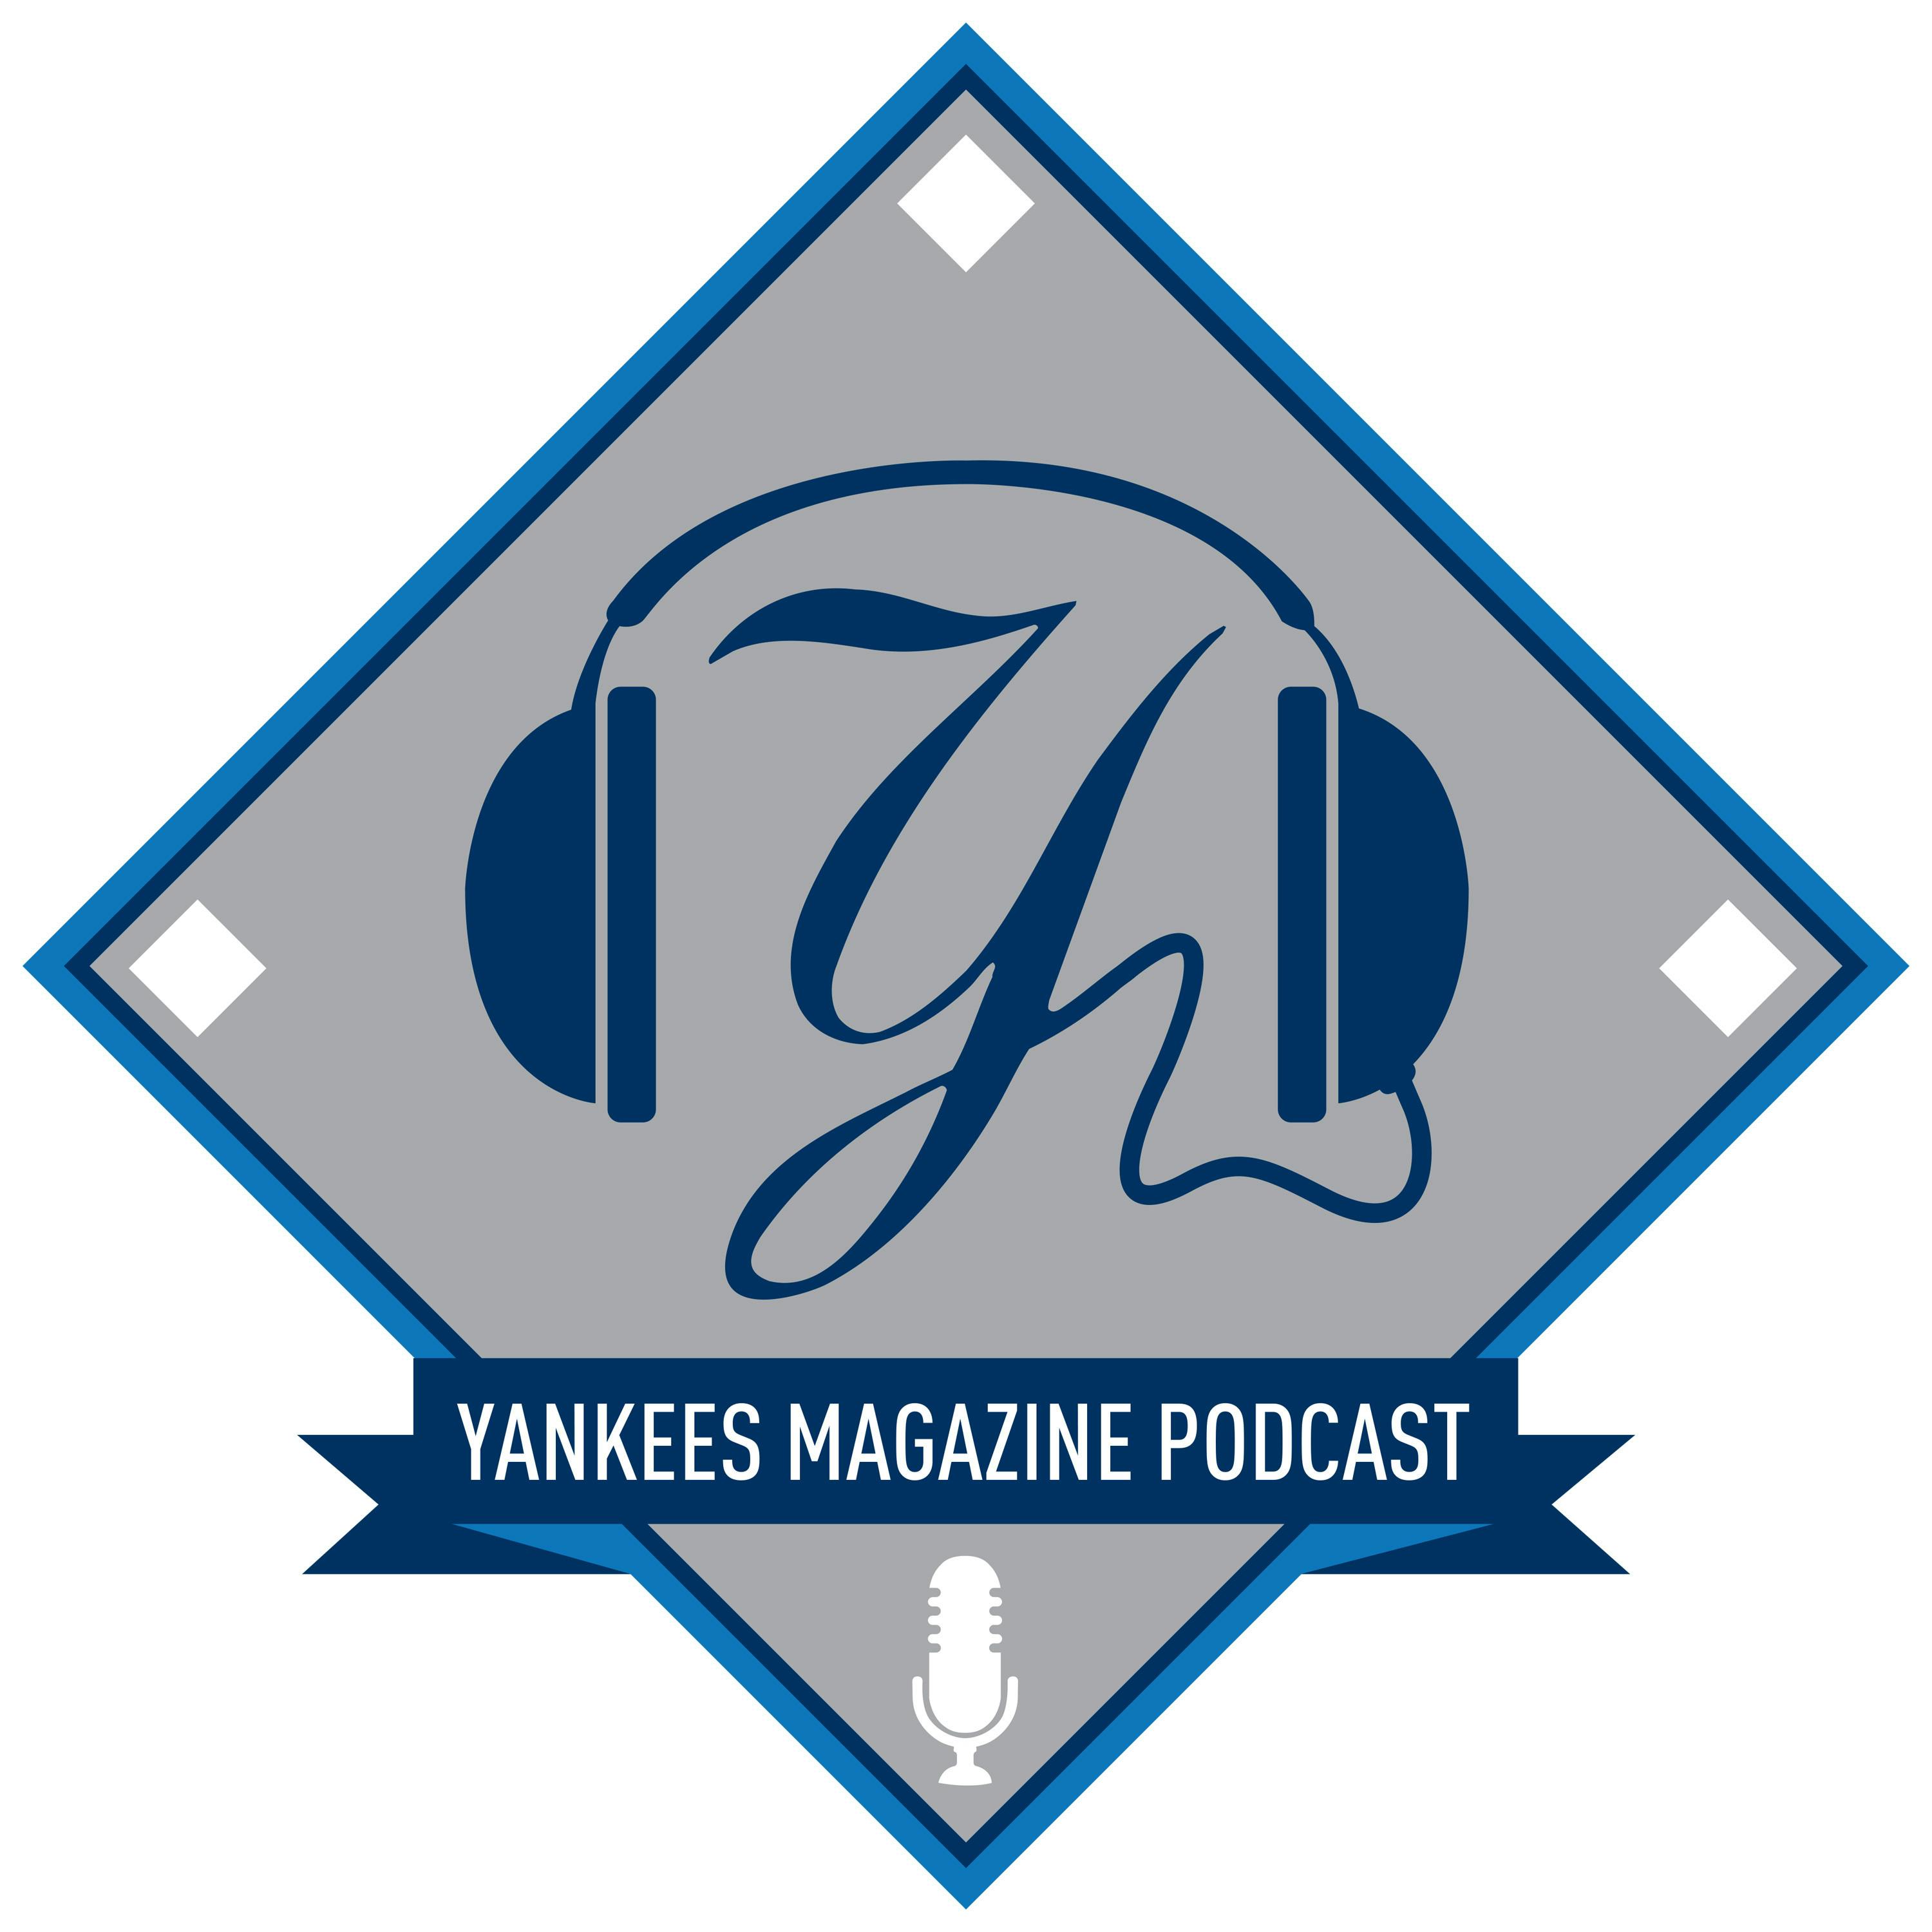 Yankees Magazine Podcast: Episode 25